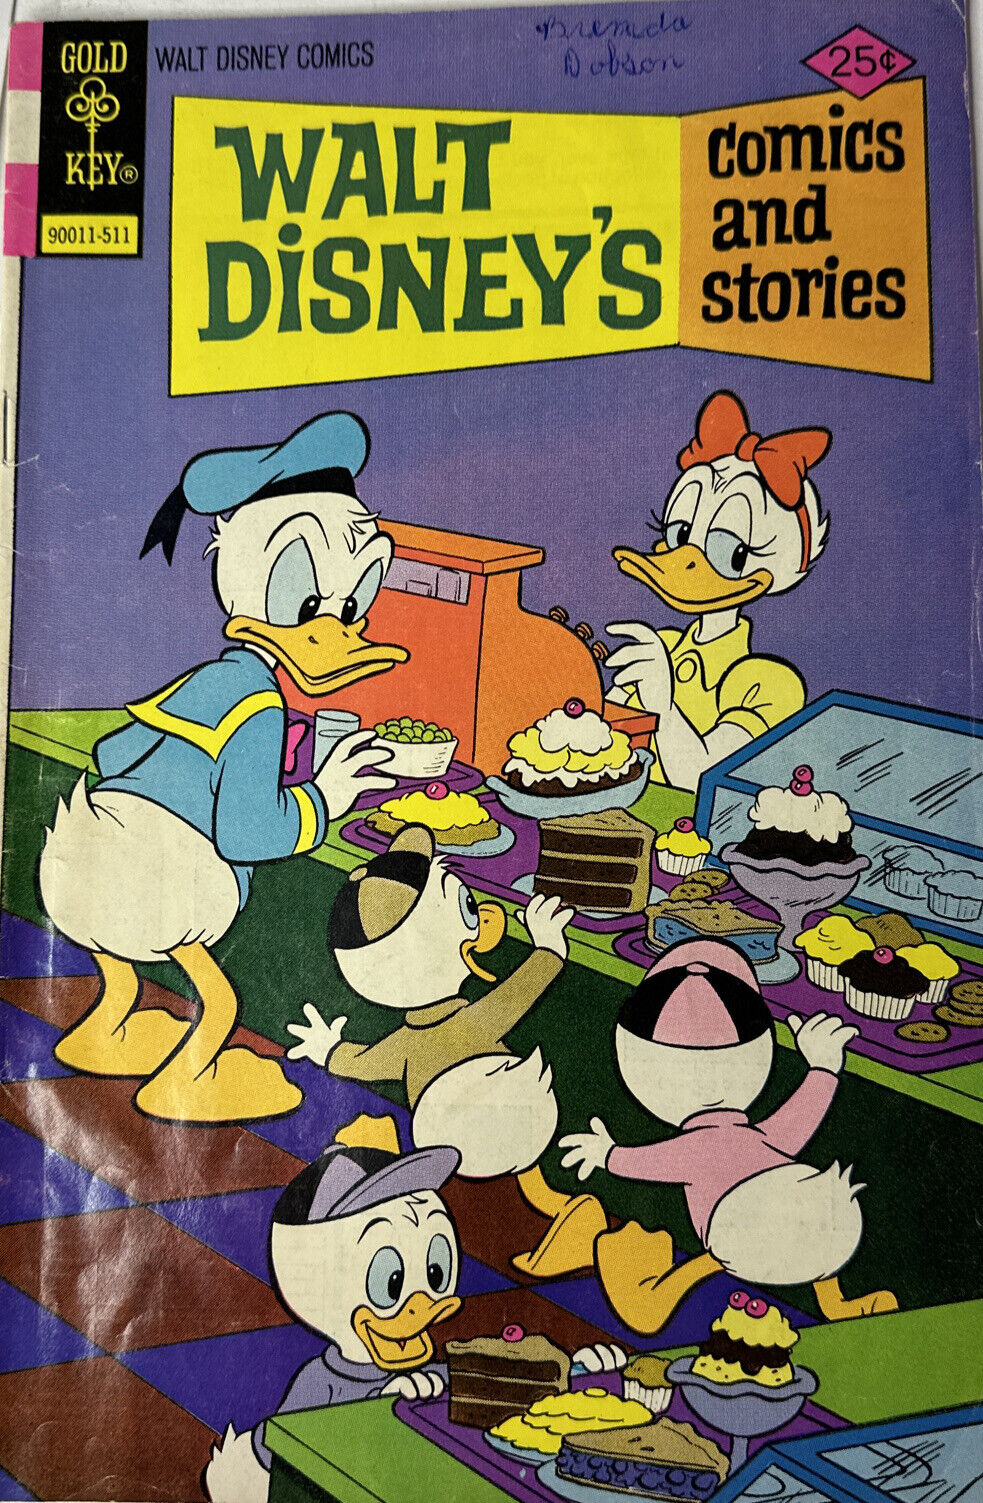 1975 Vol 36 No 2 Gold Key Walt Disney Comics and Stories Donald Duck Road Runner